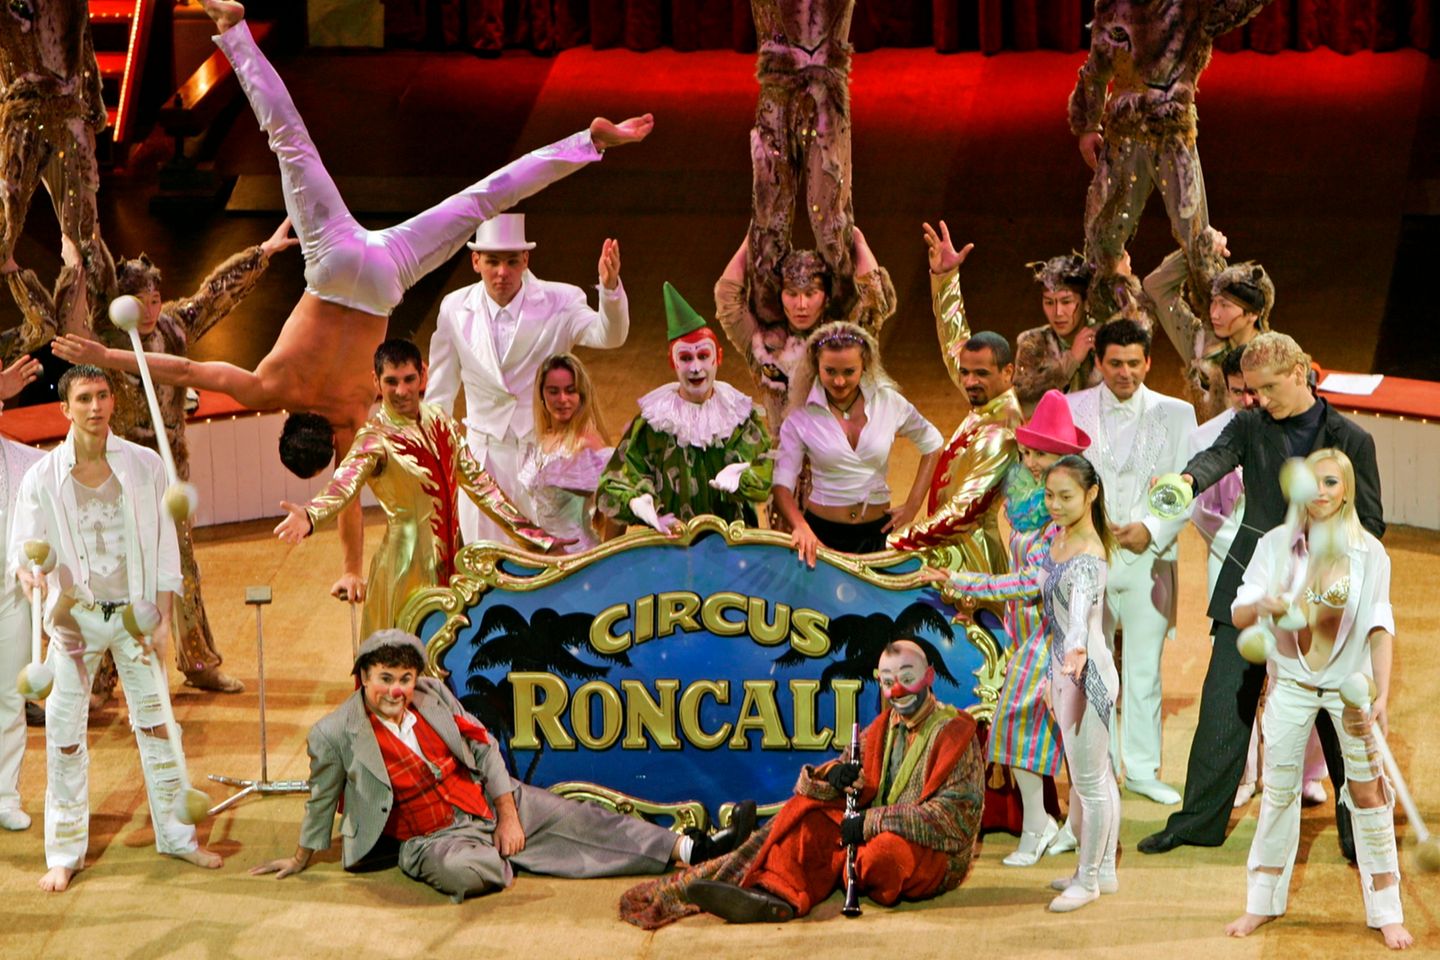 Für diese Entscheidung wird der Zirkus Roncalli gerade von allen gefeiert!